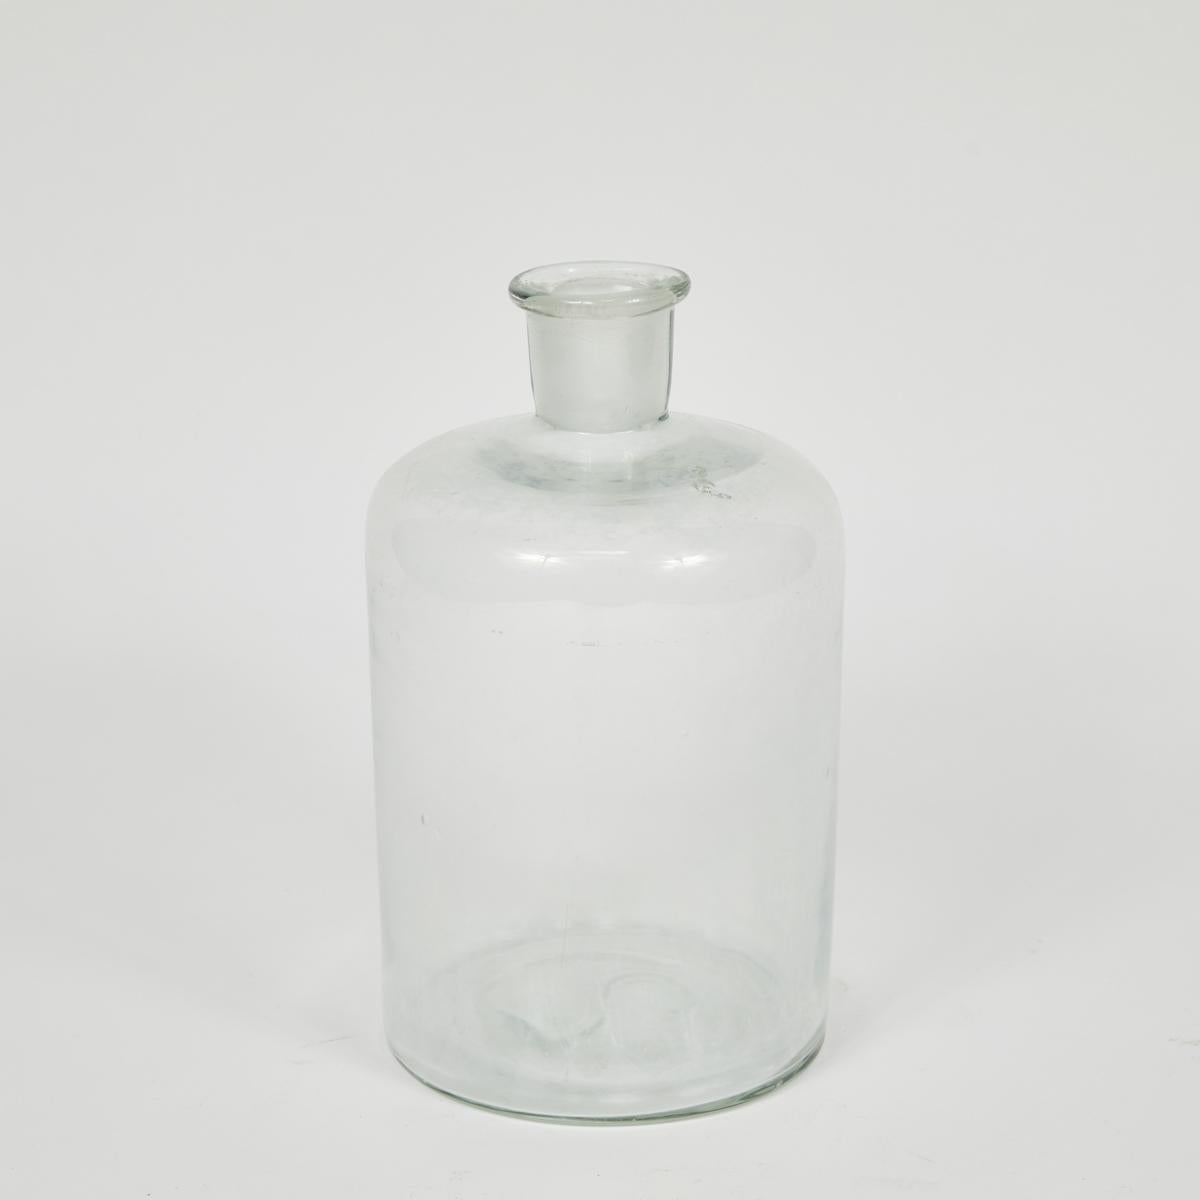 Ces bouteilles en verre anglaises datent du début des années 1940. Ils sont disponibles en 2 tailles et sont accompagnés de bouchons assortis. De plus, ils peuvent servir de vases ou constituer une belle addition décorative à tout cabinet. trois